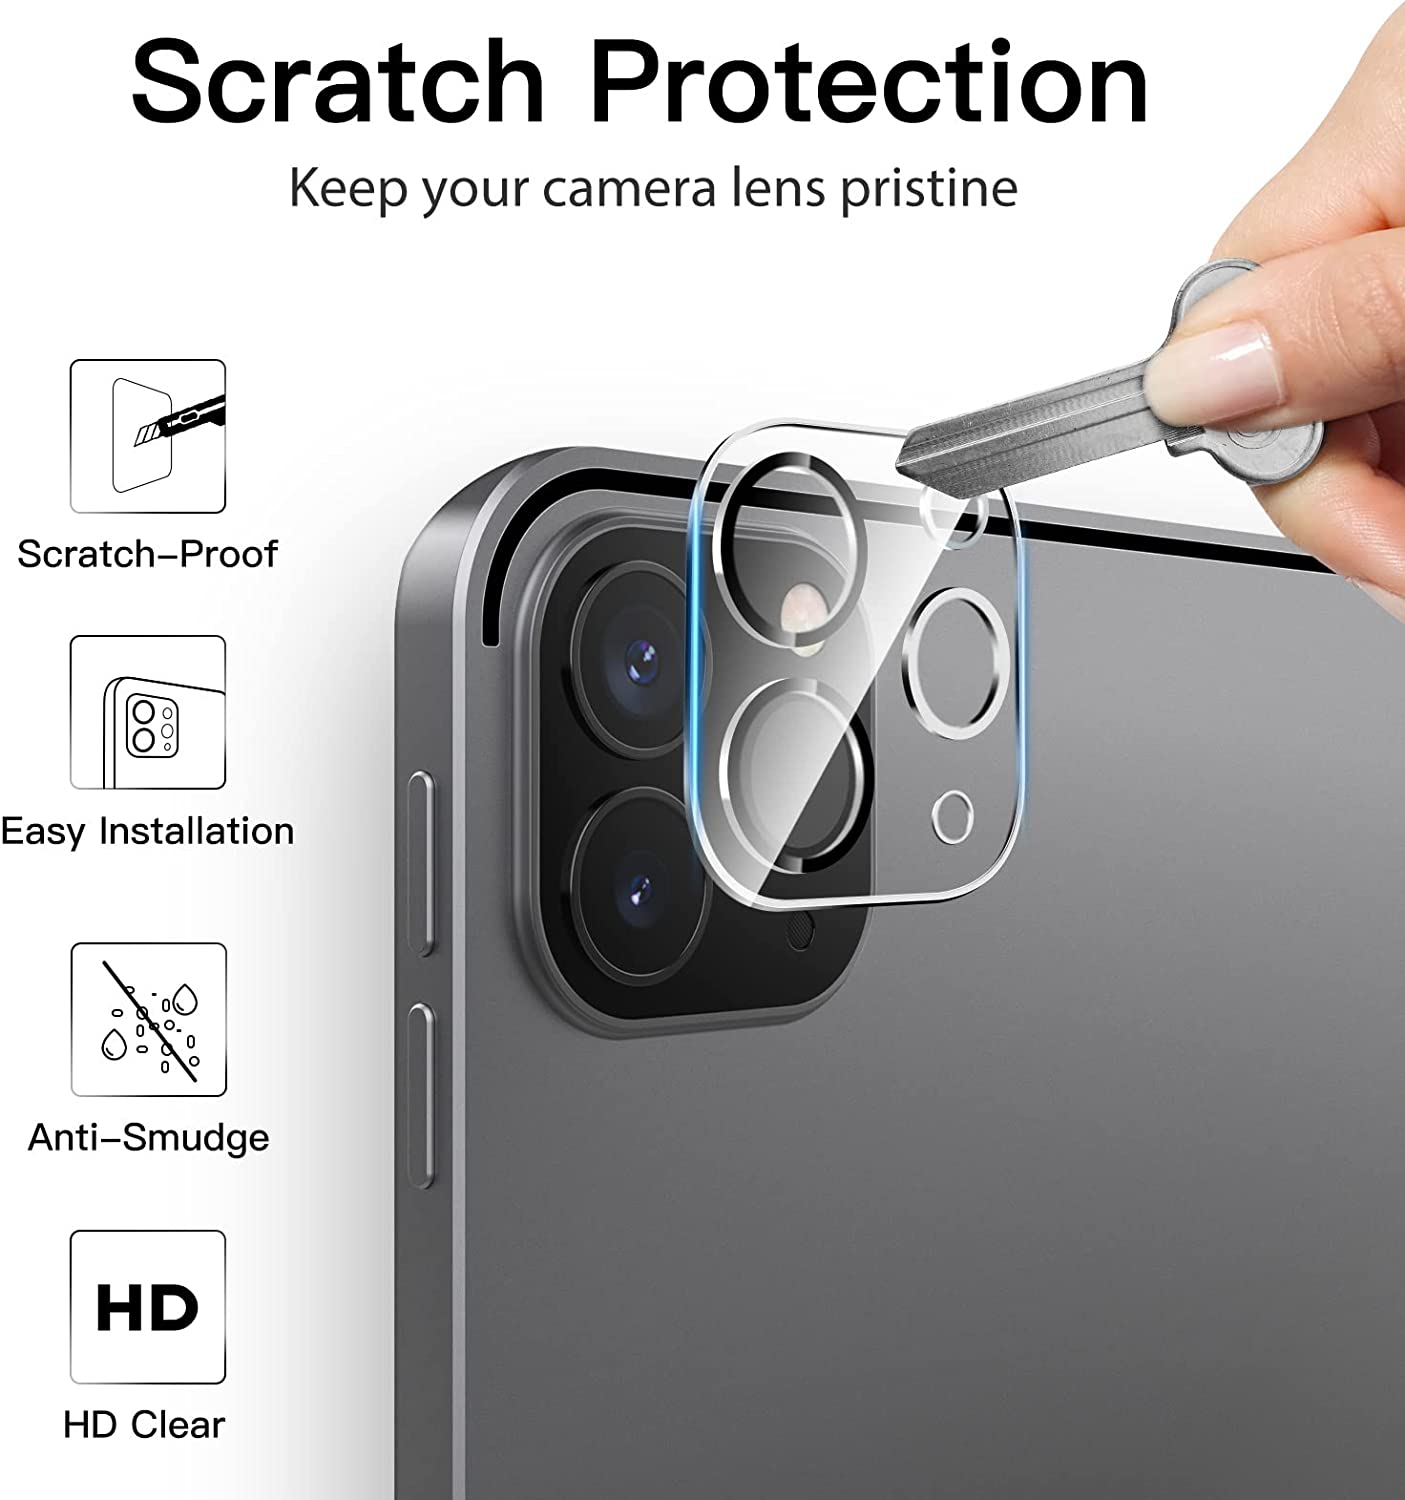 Protecteur d’écran JETech pour iPad Pro 11 pouces, 2022,2021,2020 (4,3,2 génération) et protecteur d’objectif d’appareil photo, 2 paquets 5